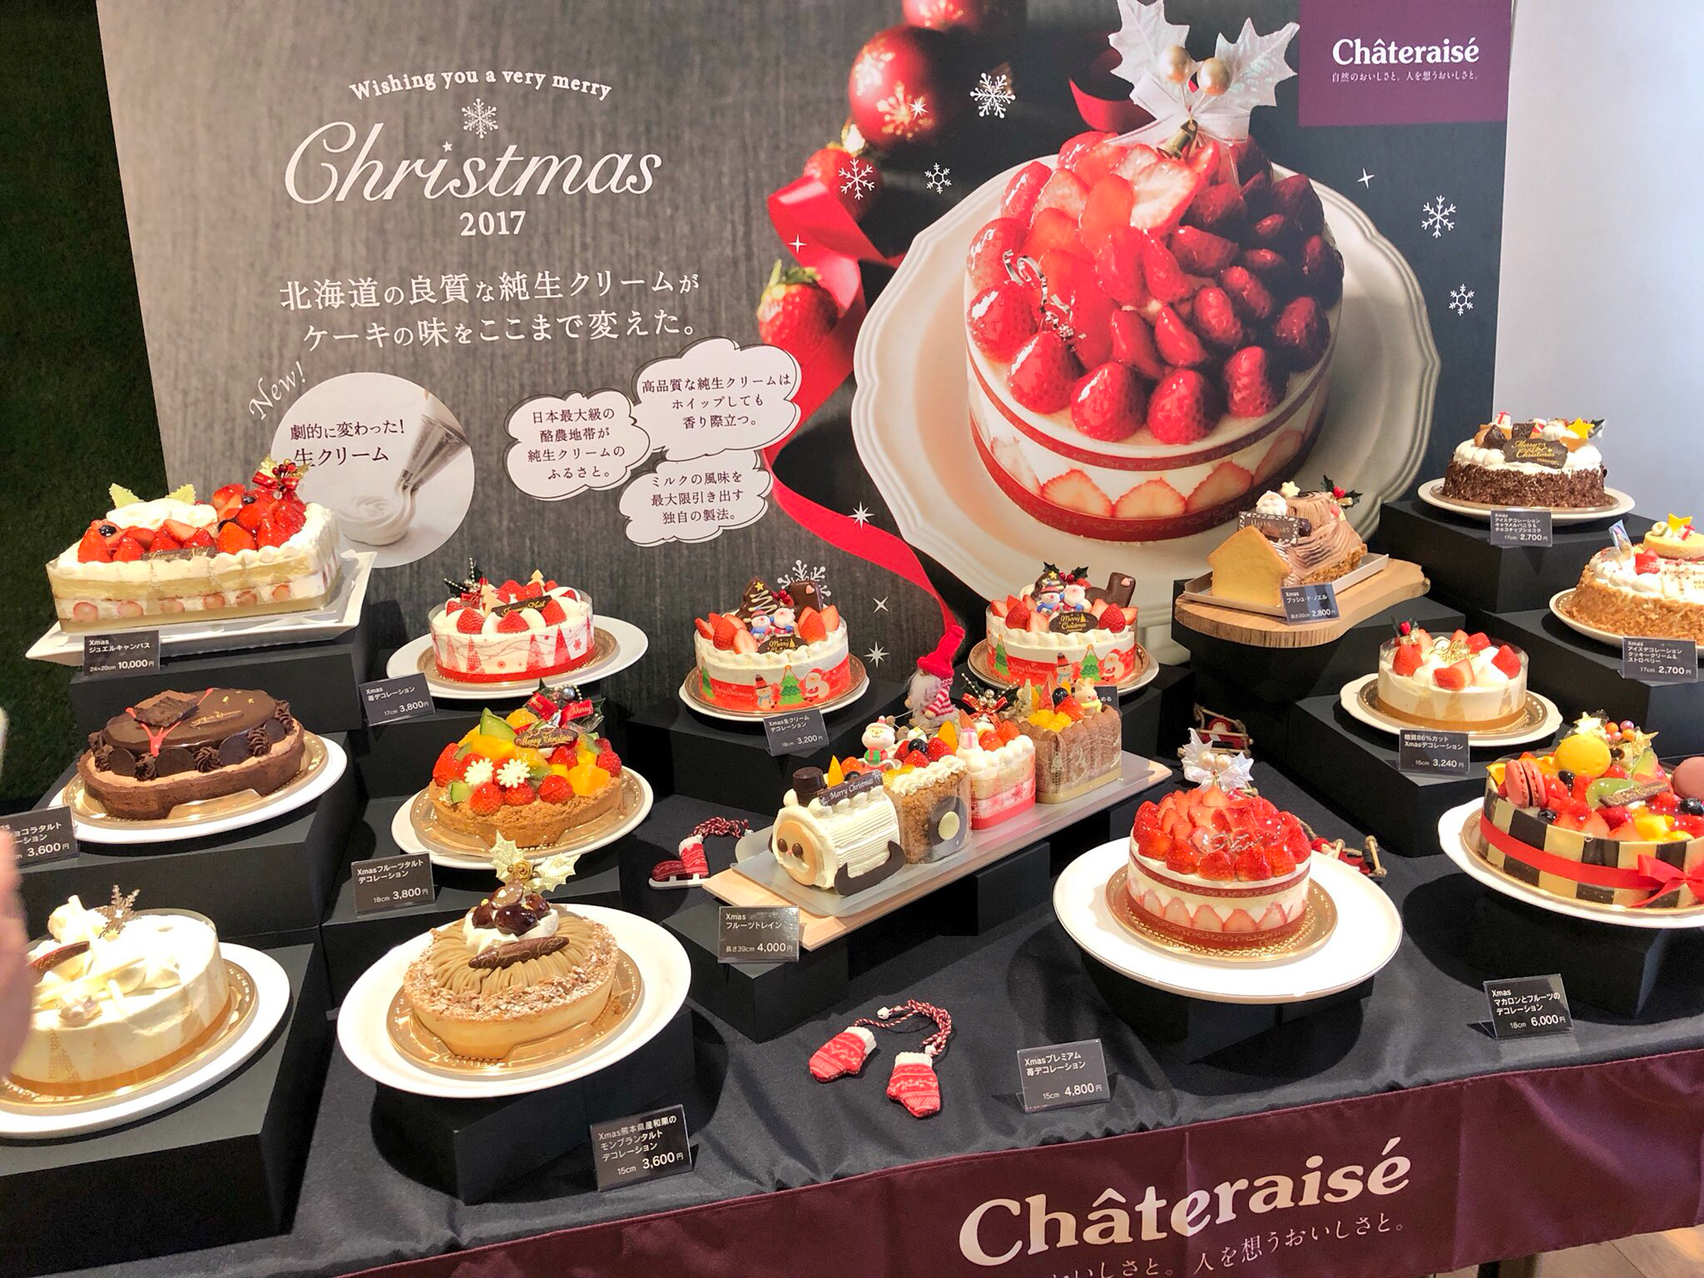 シャトレーゼ Chateraise 試食会 クリスマスケーキ17 ミスター黒猫のカフェめぐり パンケーキを日本一実食